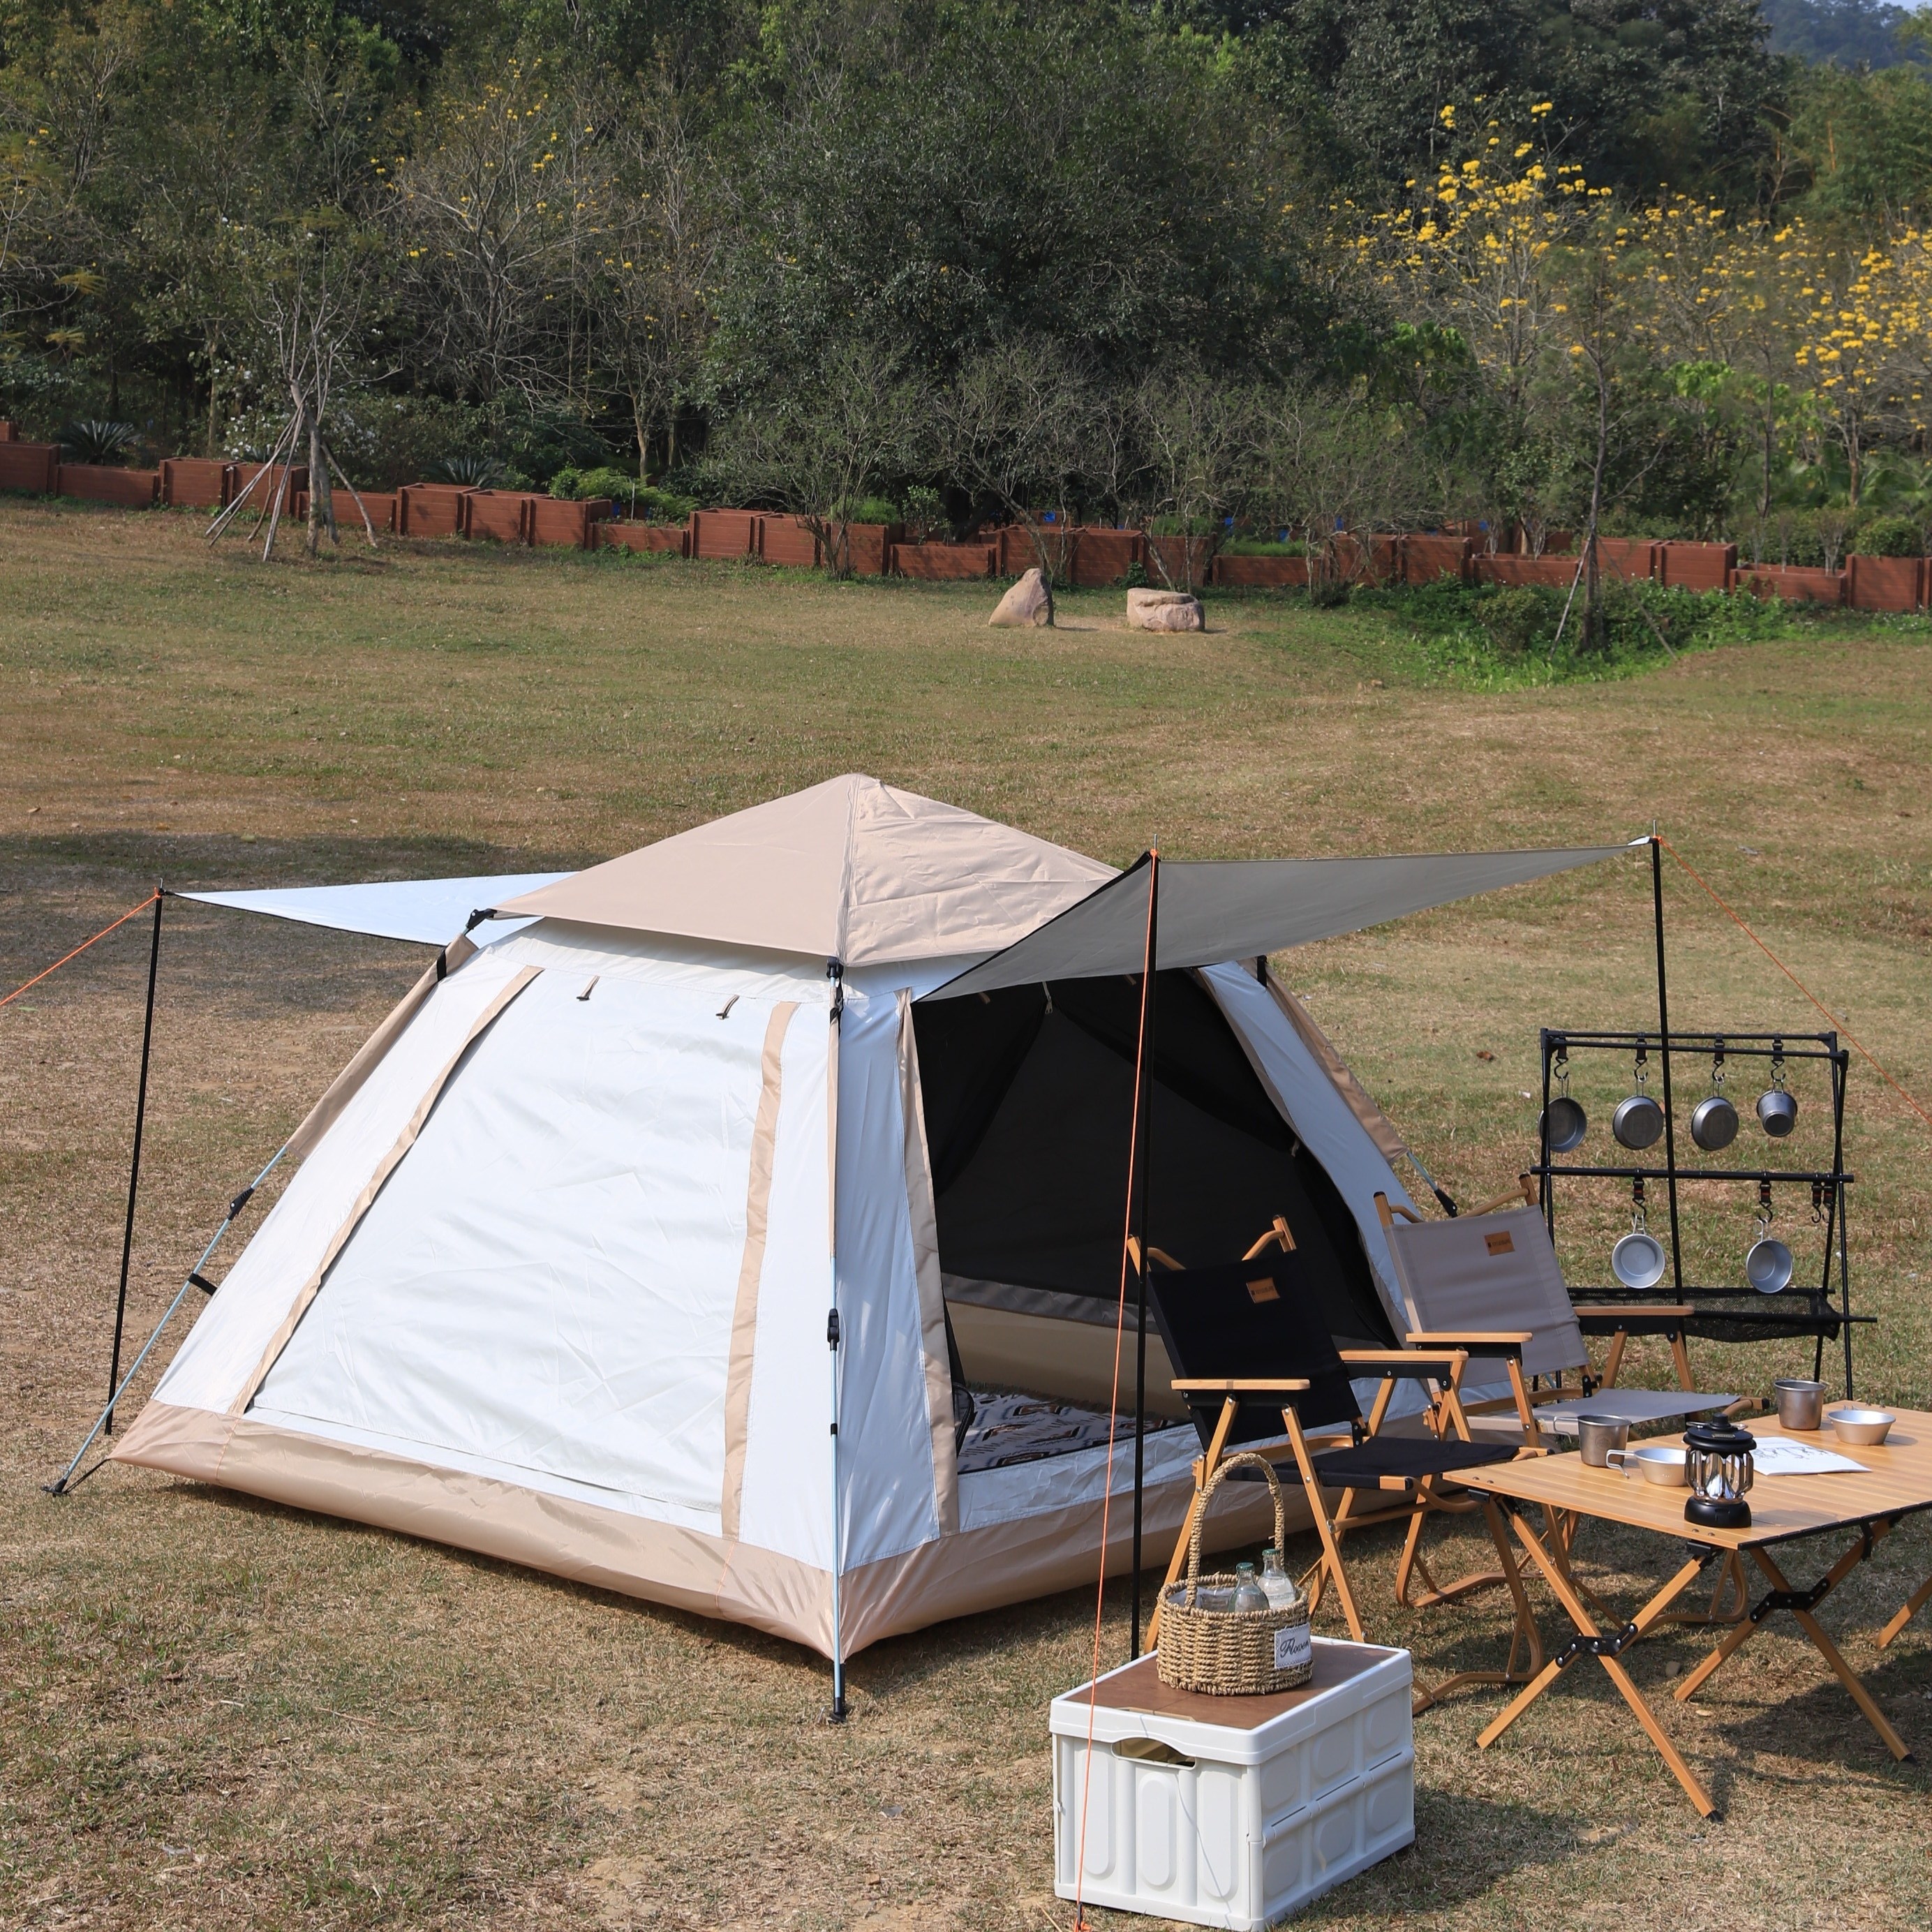 Tente LAFGUR, tente de Camping de capacité d'isolation forte